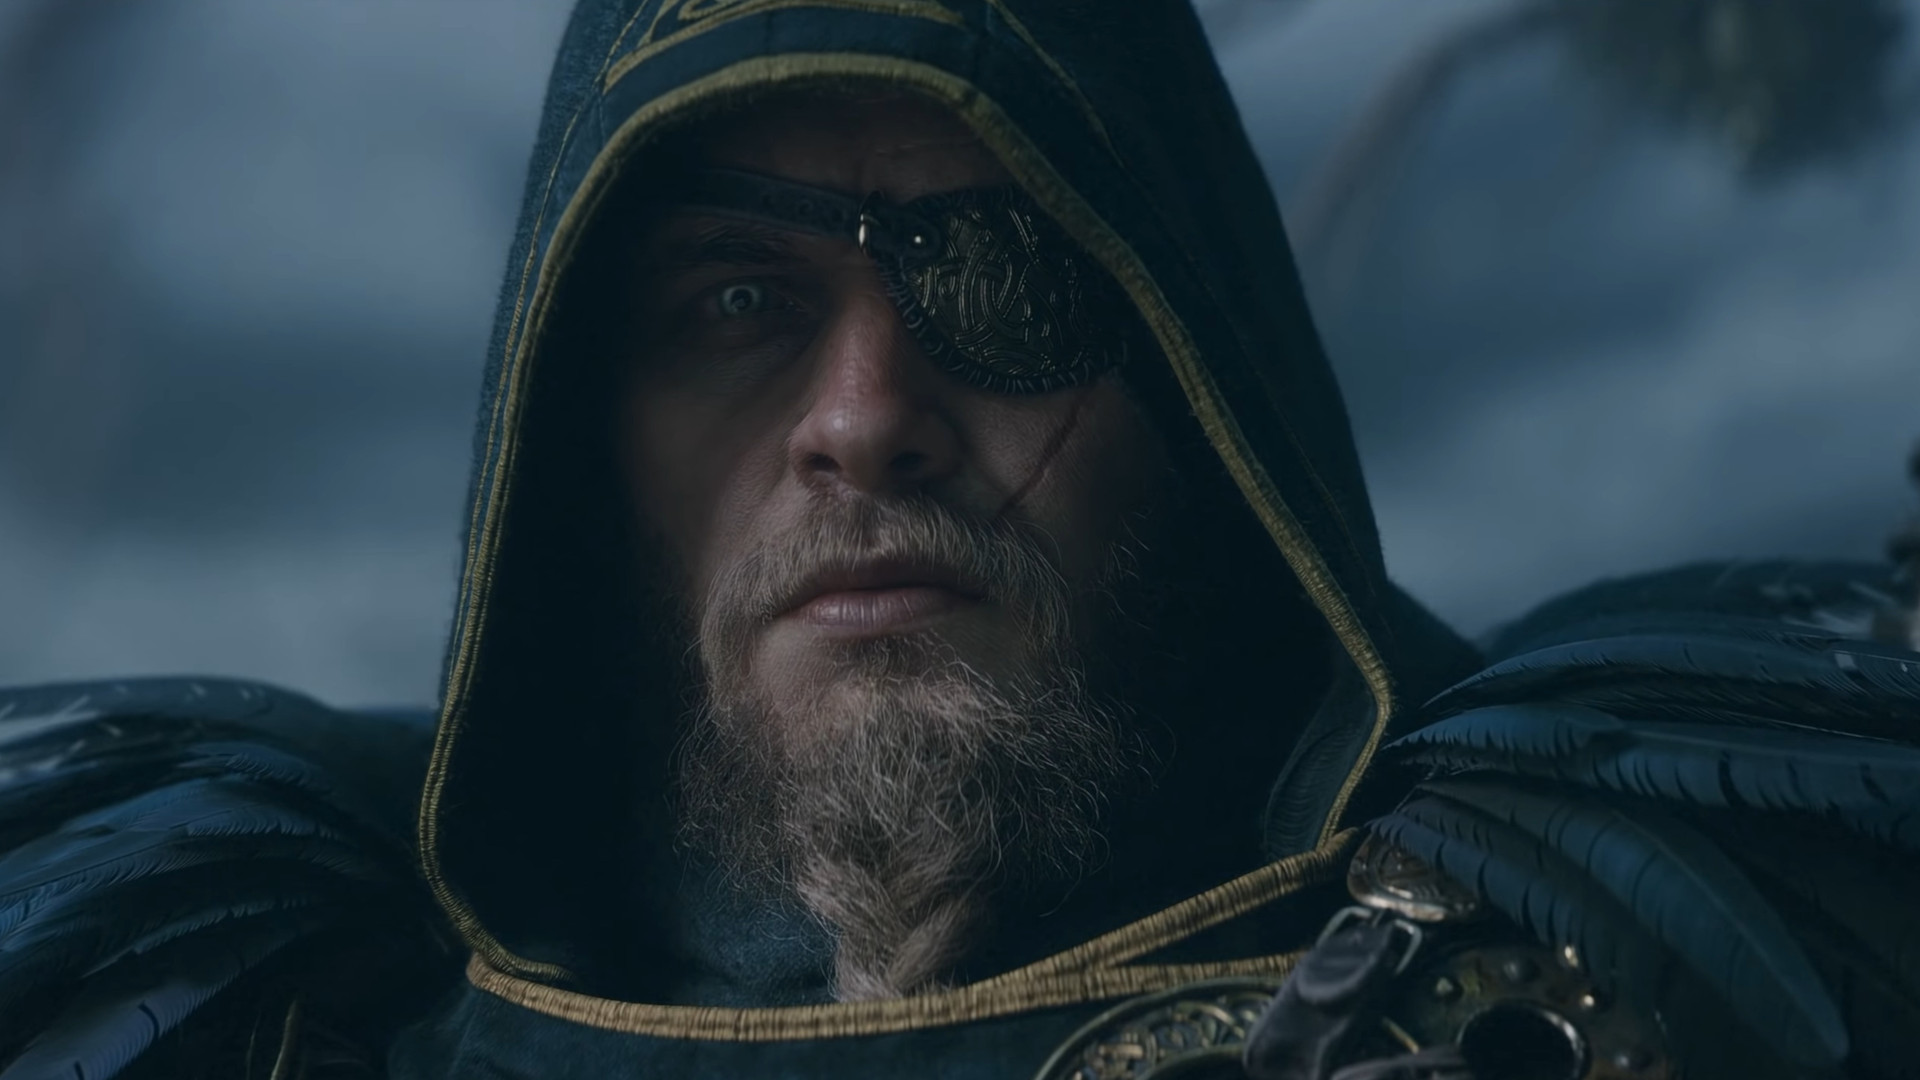 Assassin's Creed Valhalla: Dawn of Ragnarok Costs $40